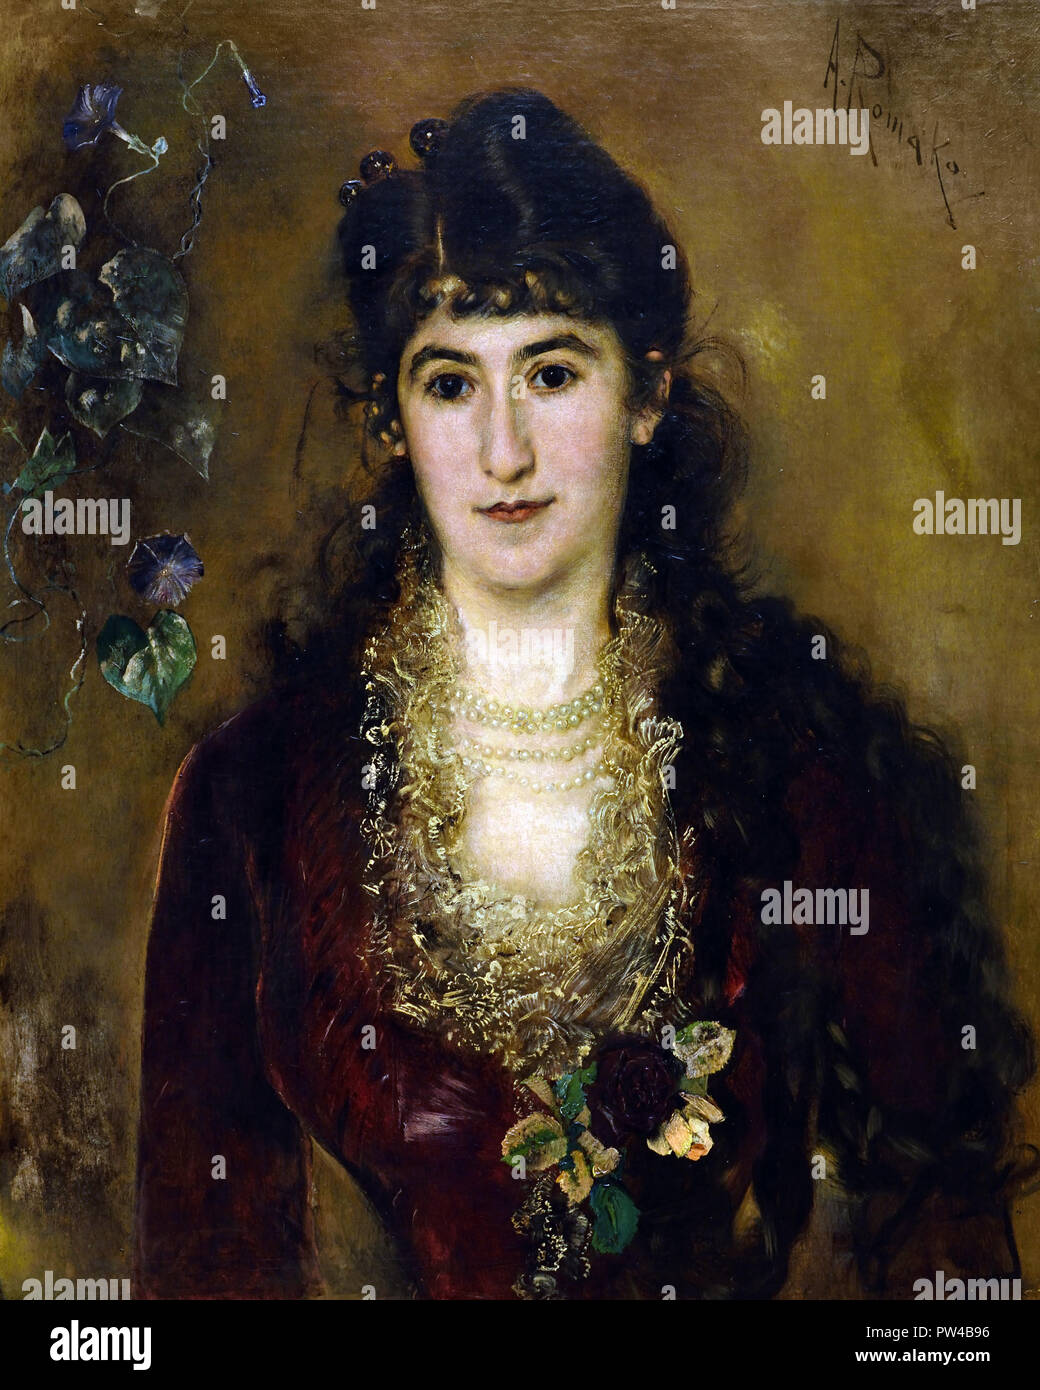 Dame dans une robe rouge 1889 par Anton Romako 1832 - 1889 peintre autrichien. L'Autriche . ( Anton Romako a été l'un des grands pionniers du modernisme ) Banque D'Images